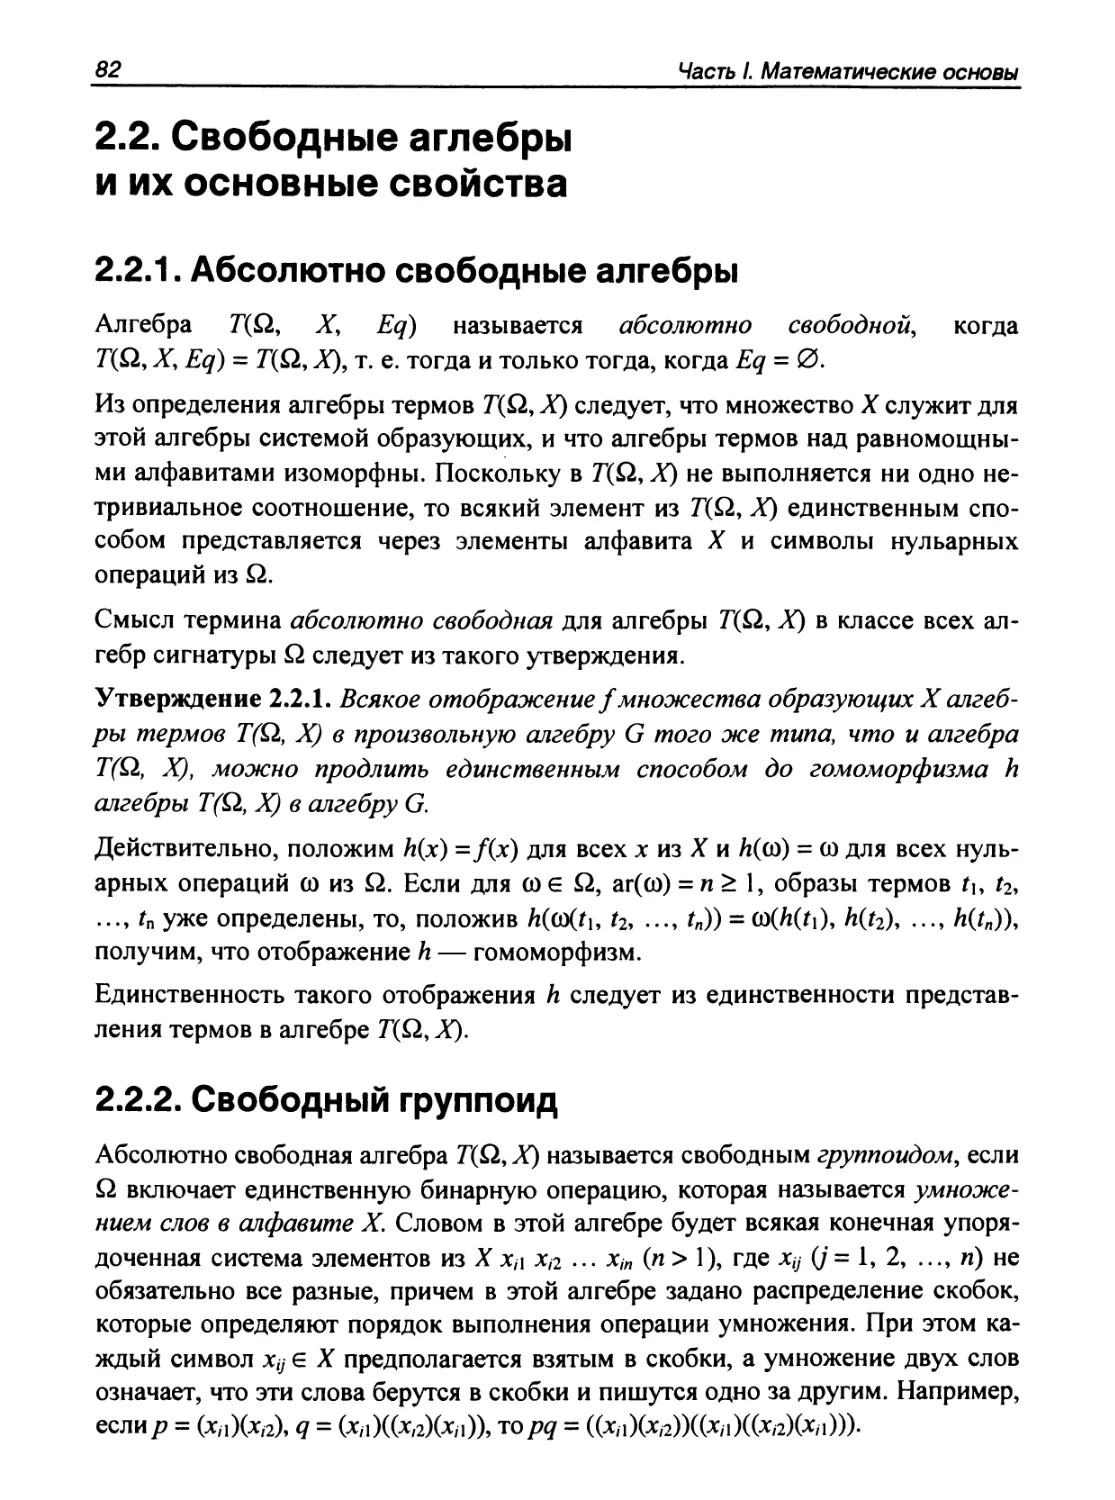 2.2. Свободные аглебры и их основные свойства
2.2.2. Свободный группоид